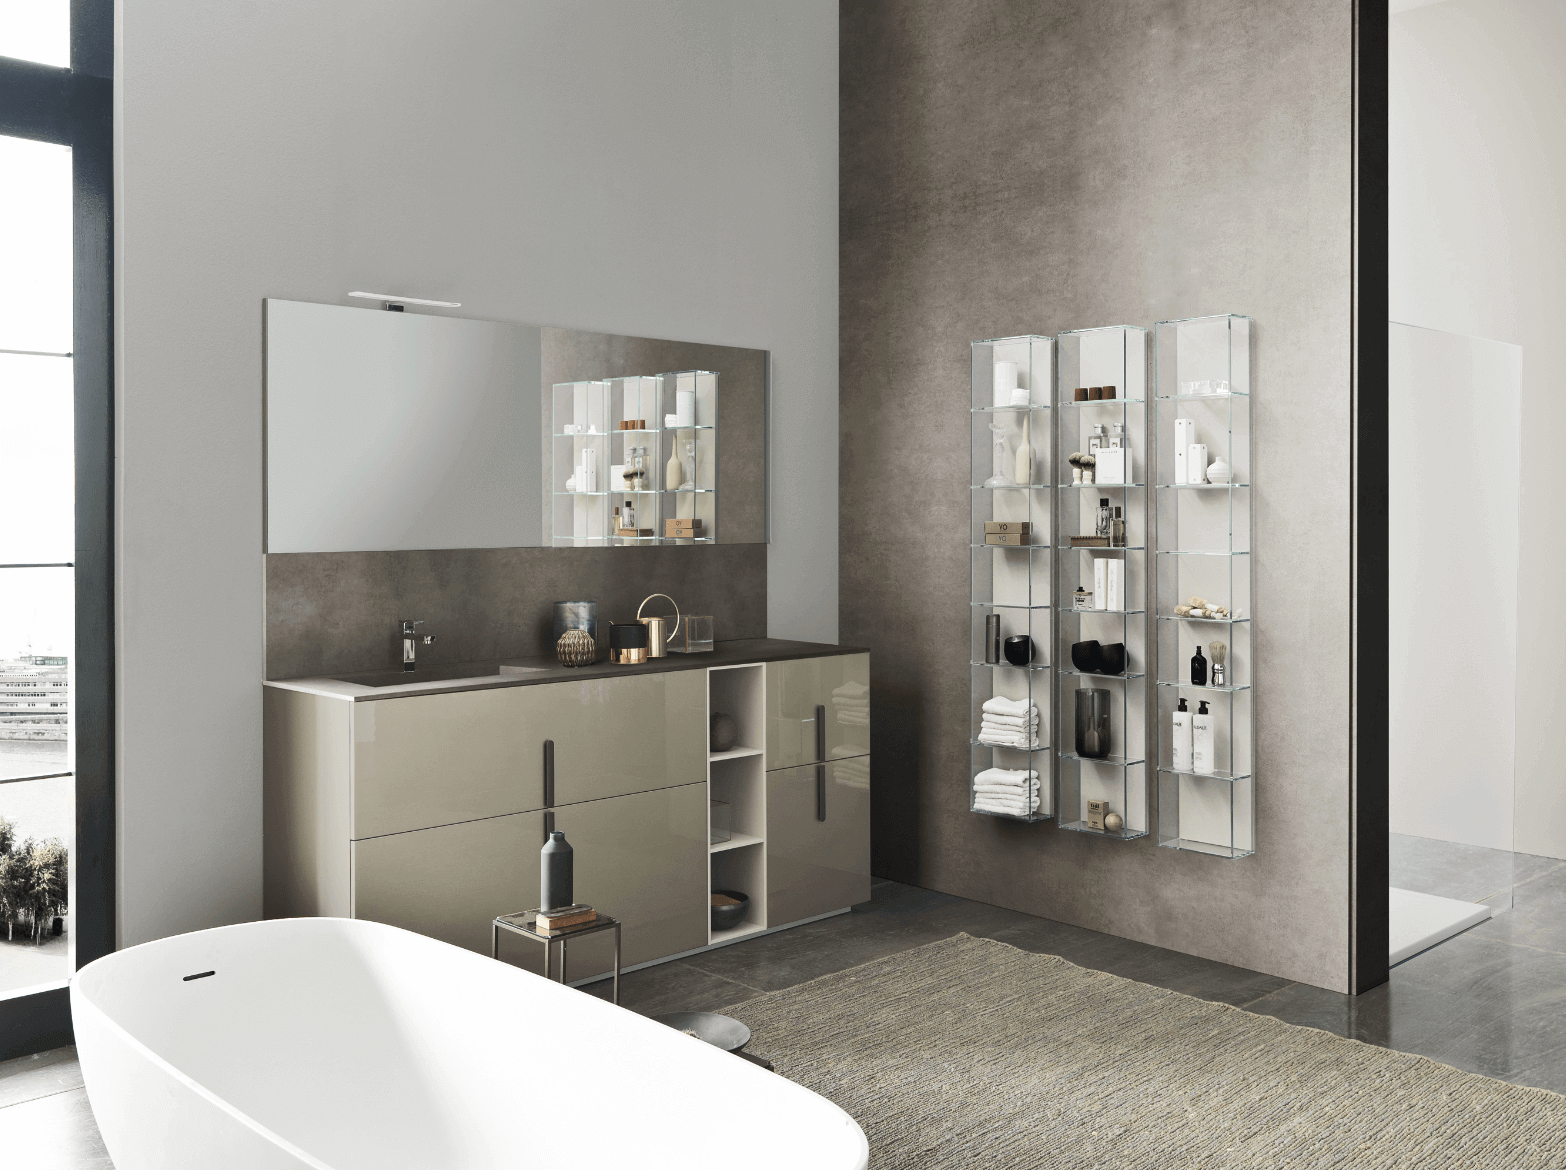 Luxury vanity with storage